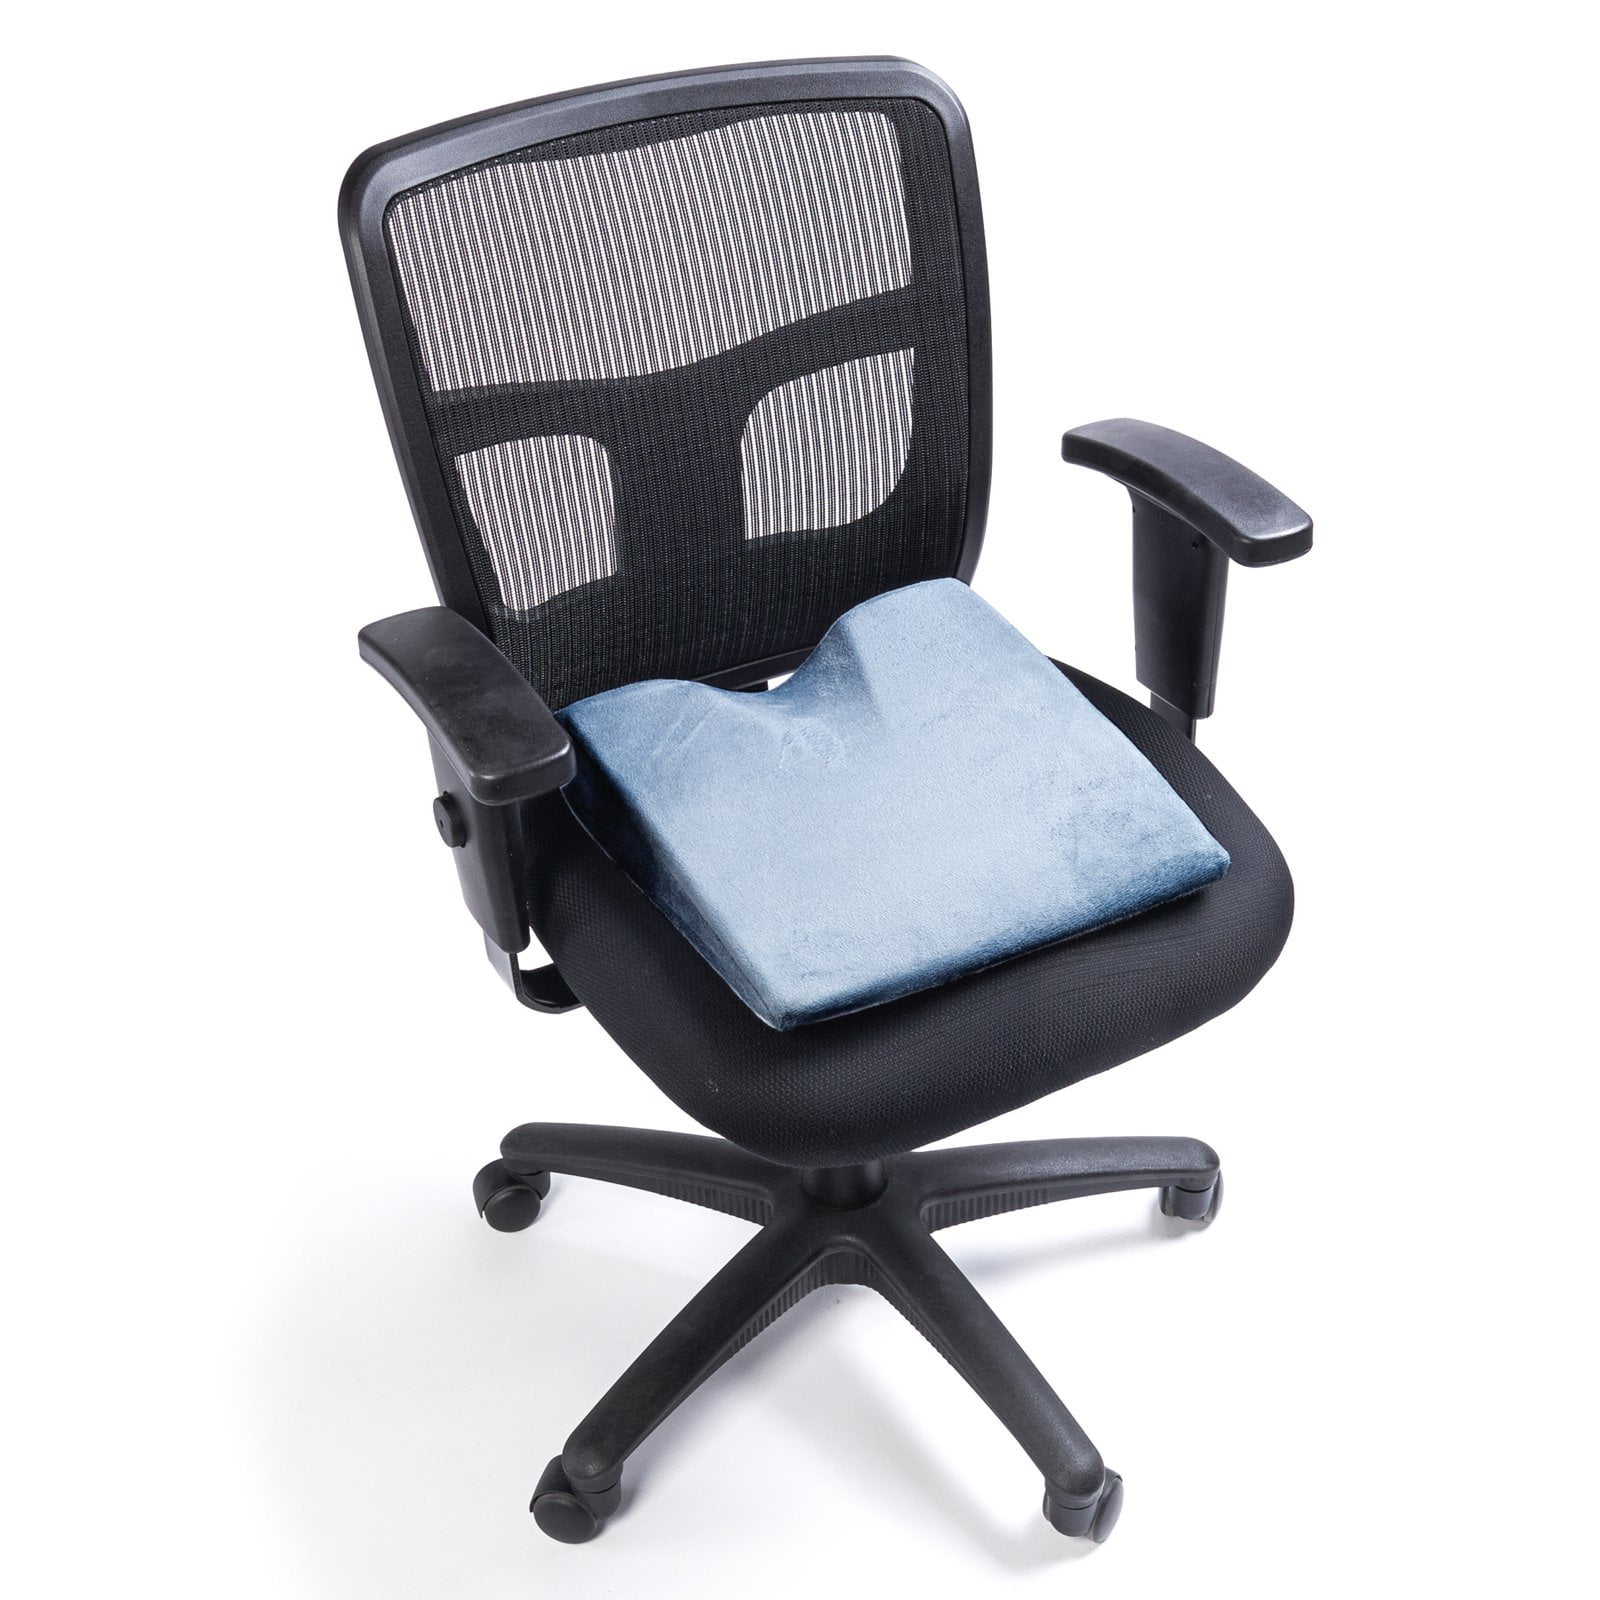 Allsett Health Memory Foam Seat Cushion for Office Chair - Black